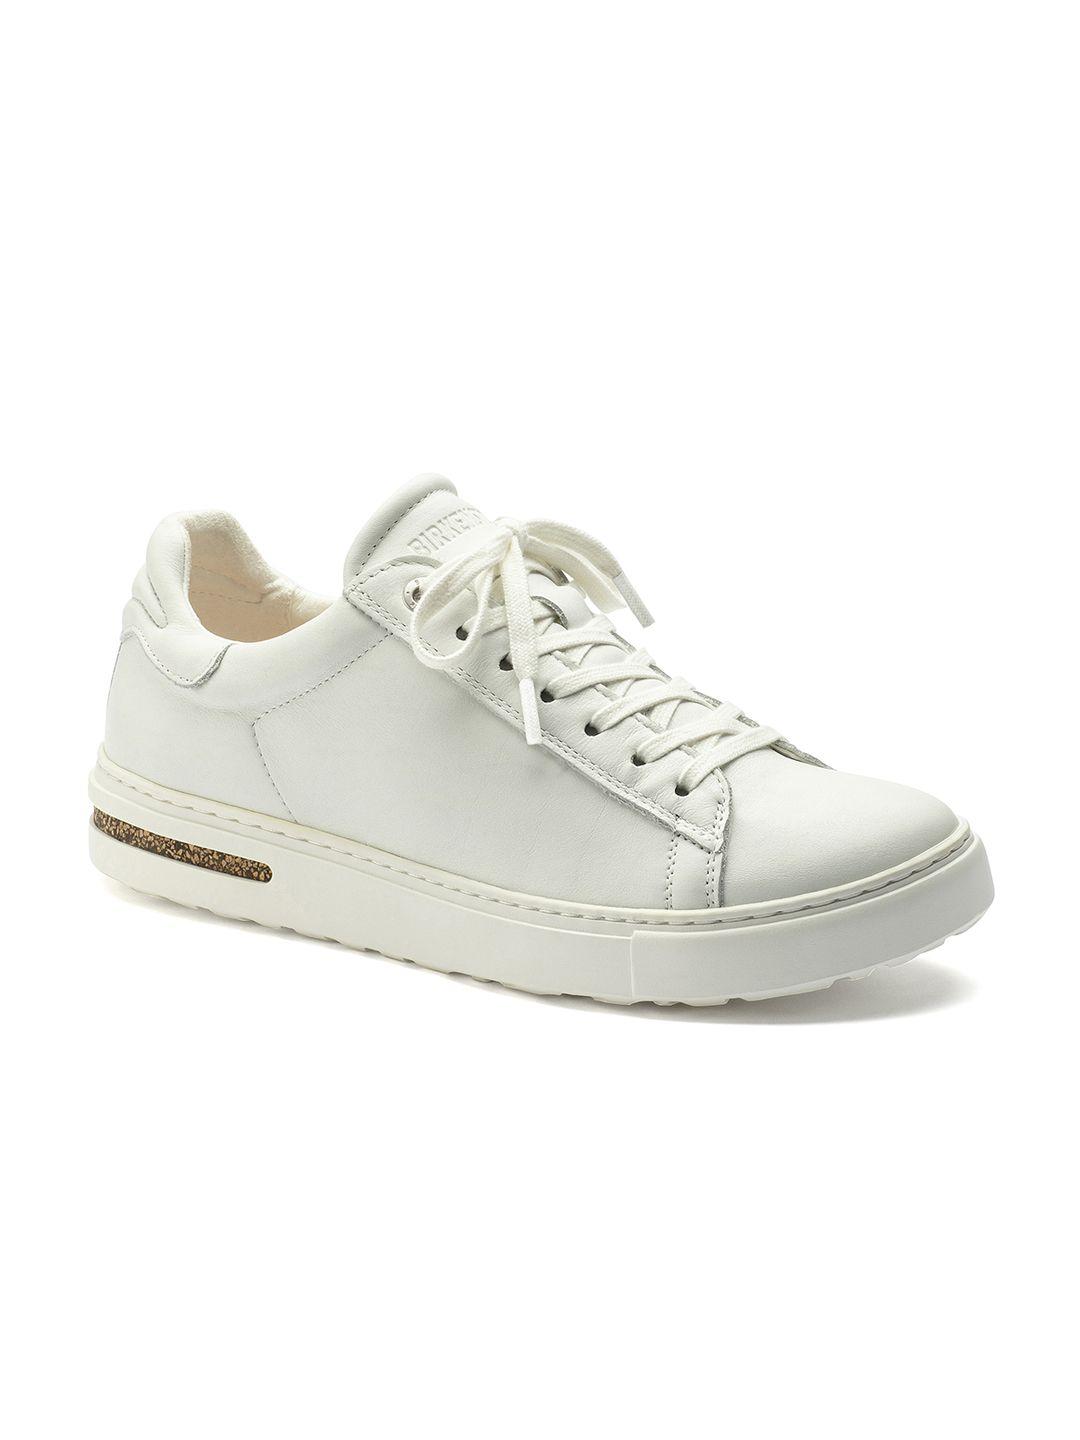 birkenstock white narrow width bend low shoes